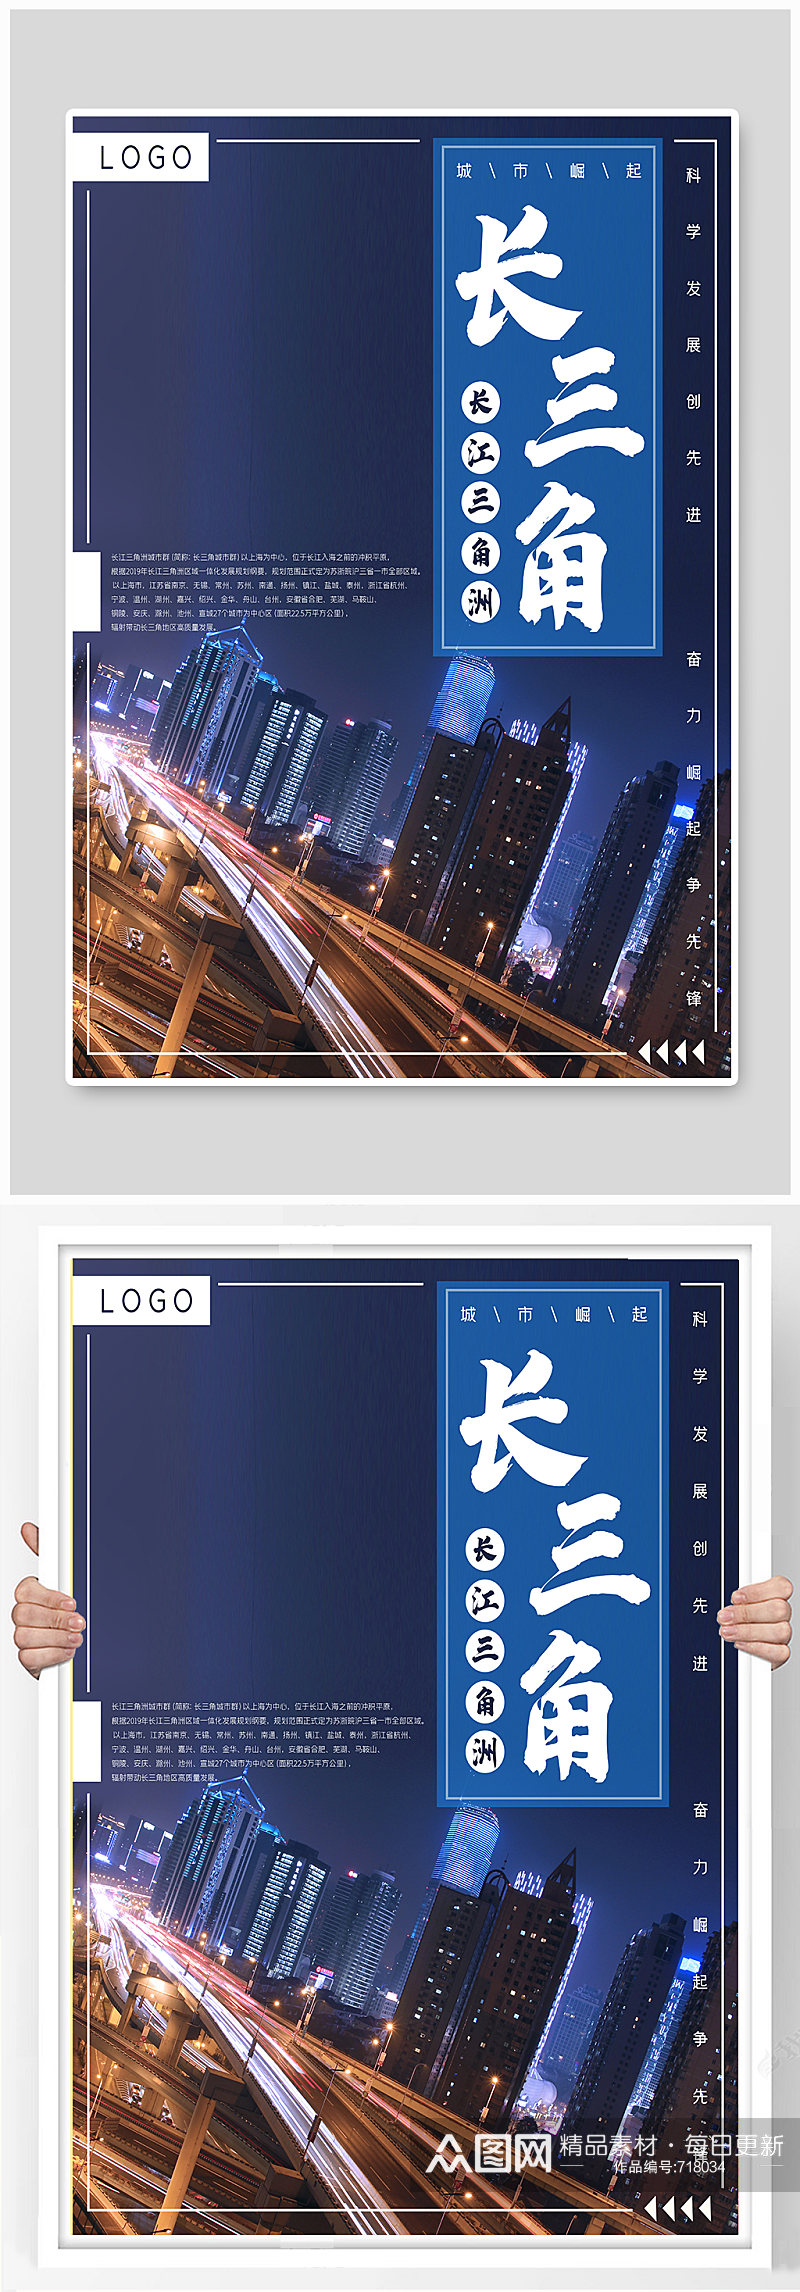 长江三角洲城市建设崛起发展蓝色海报素材